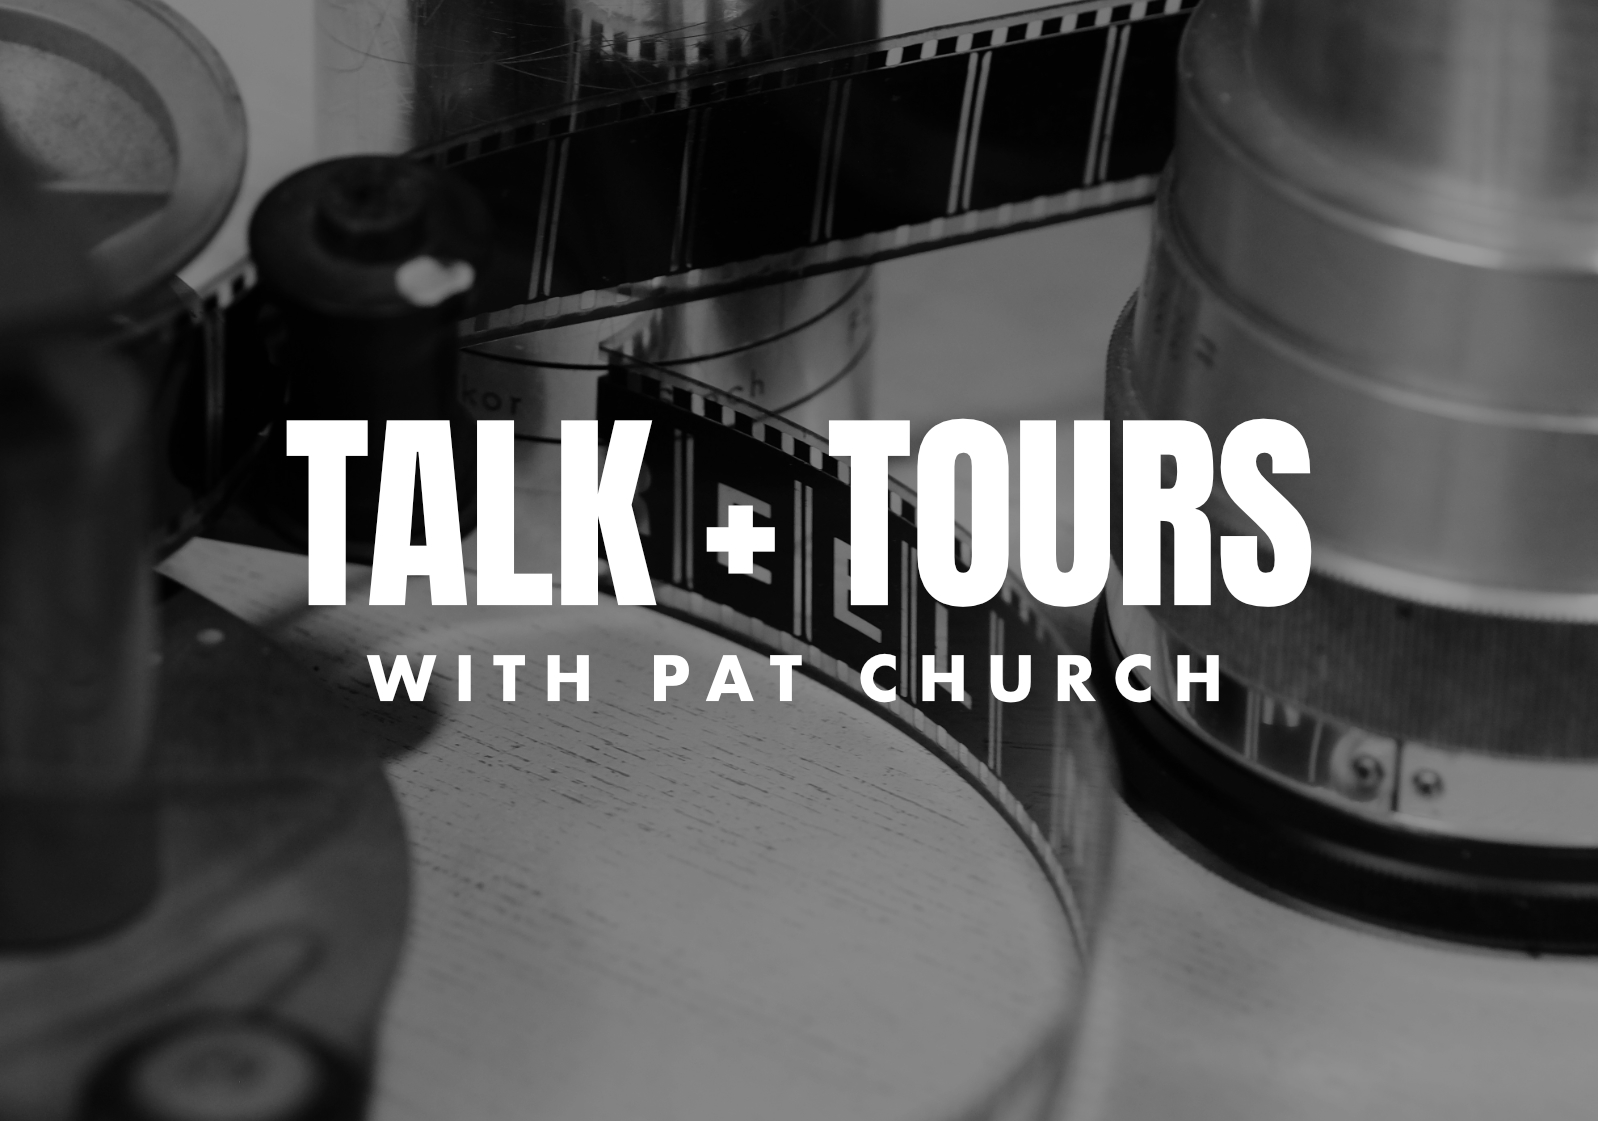 TALK + TOUR